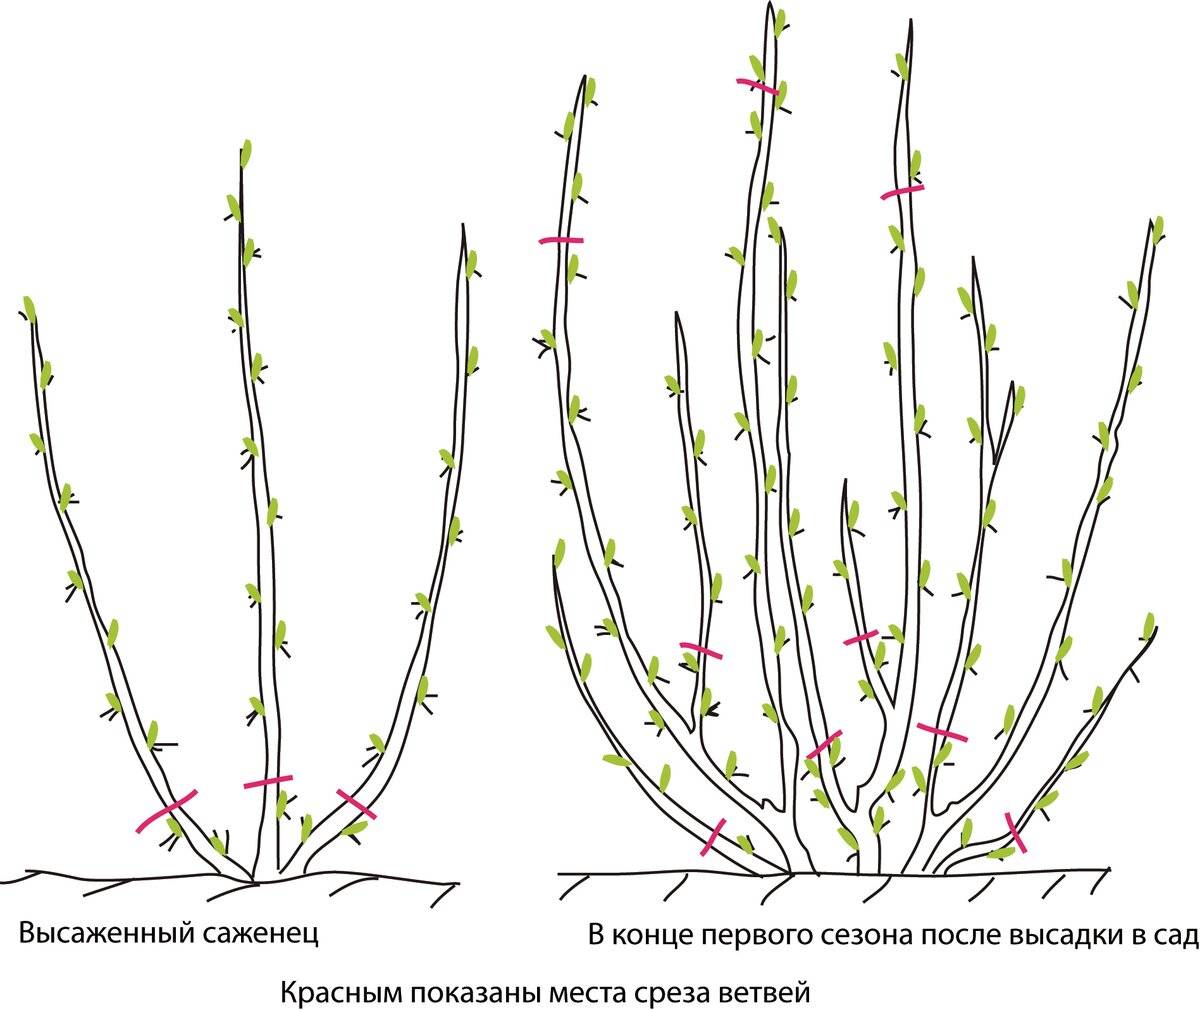 Стрижка кустов: фото алгоритм формирования кроны растений, основы выбора и использования инструмента, варианты придания формы кустам